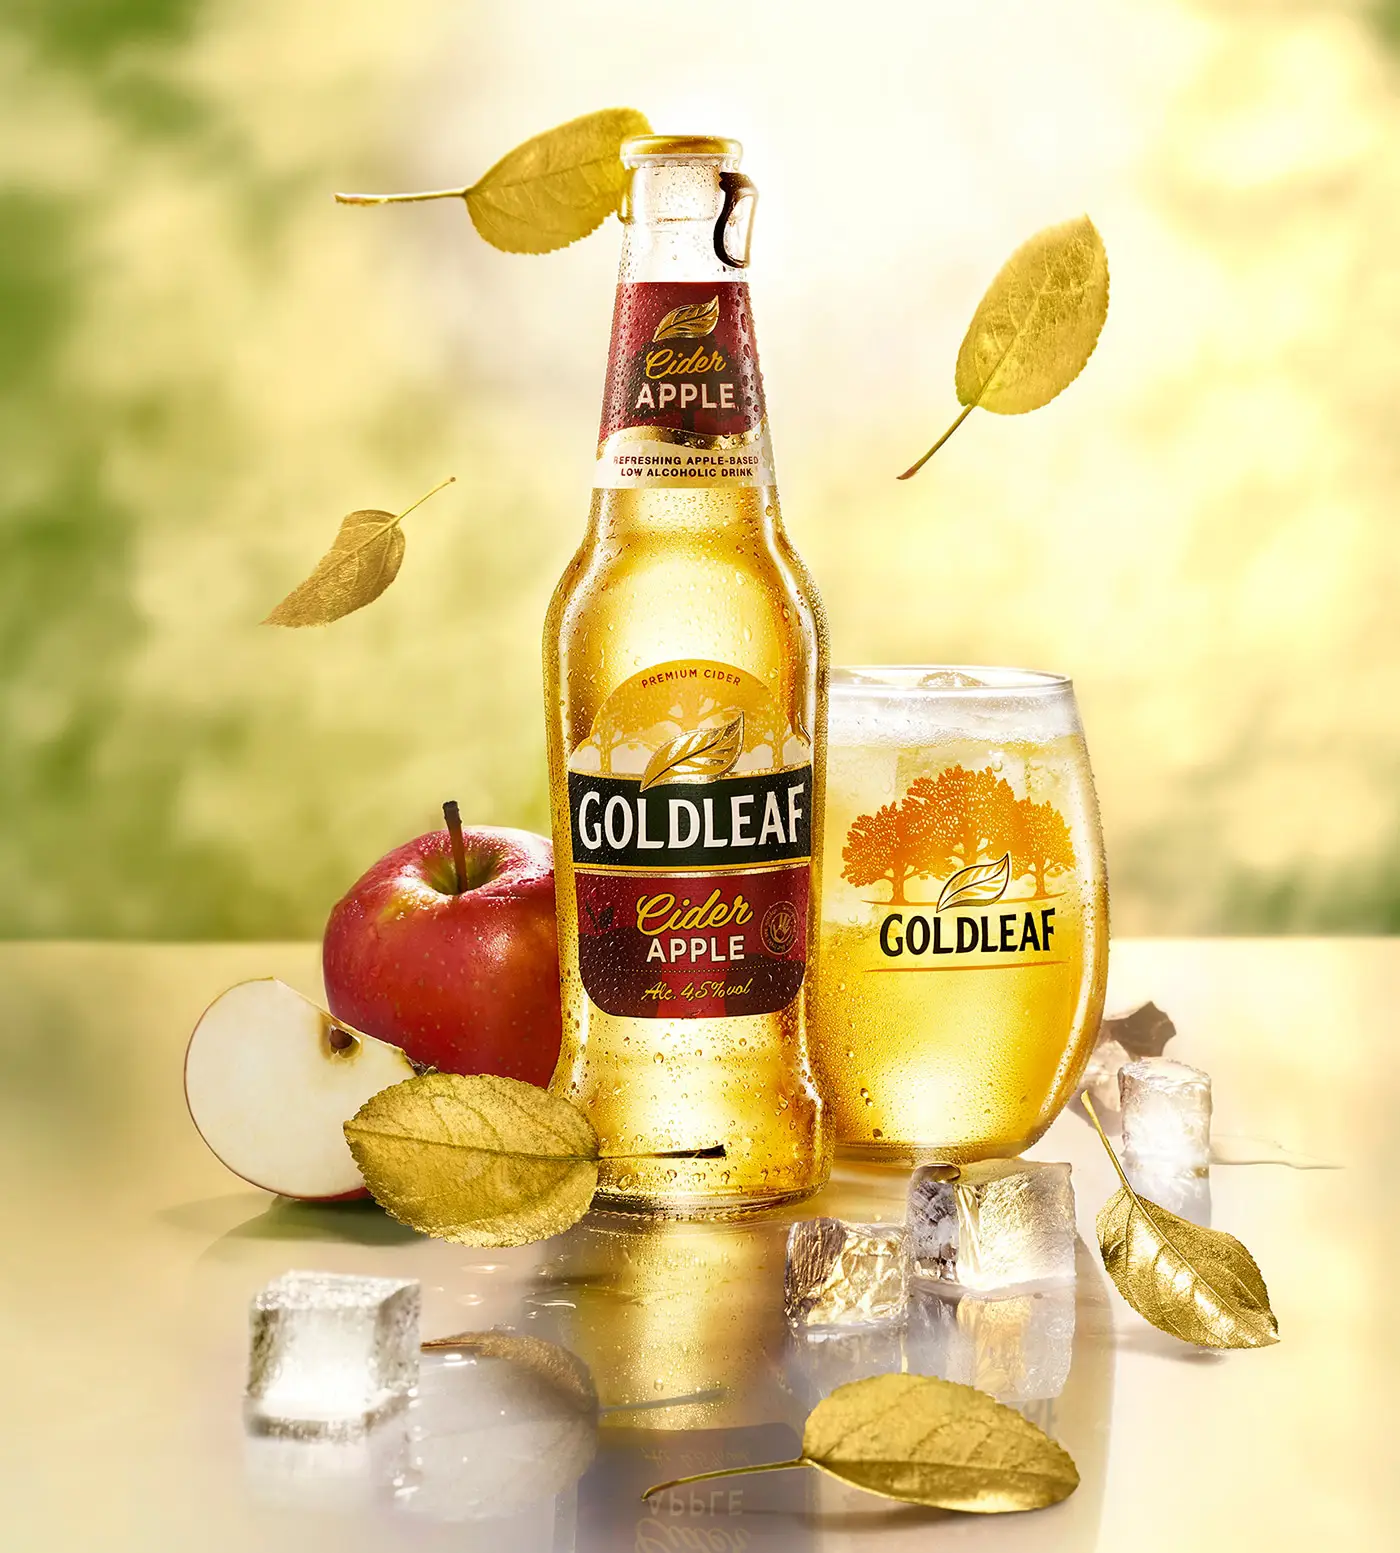 goldleaf cider apple advertising